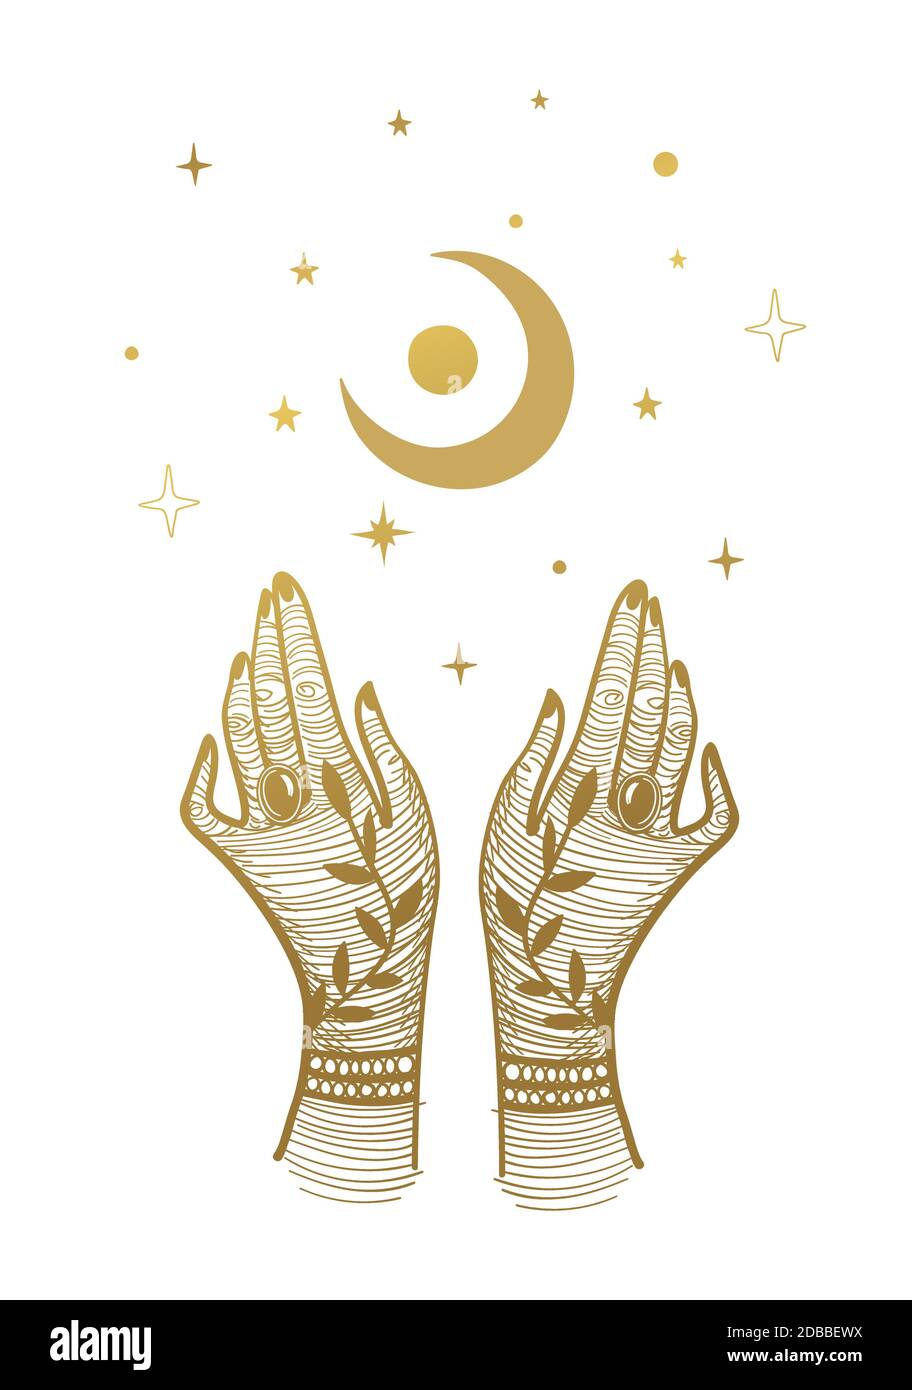 Le mani delle donne con tatuaggi e una luna crescente. Illustrazione magica, disegno boho, tatuaggio, incisione, carte tarocchi. Disegno mistico dorato isolato su sfondo bianco con stelle Illustrazione Vettoriale